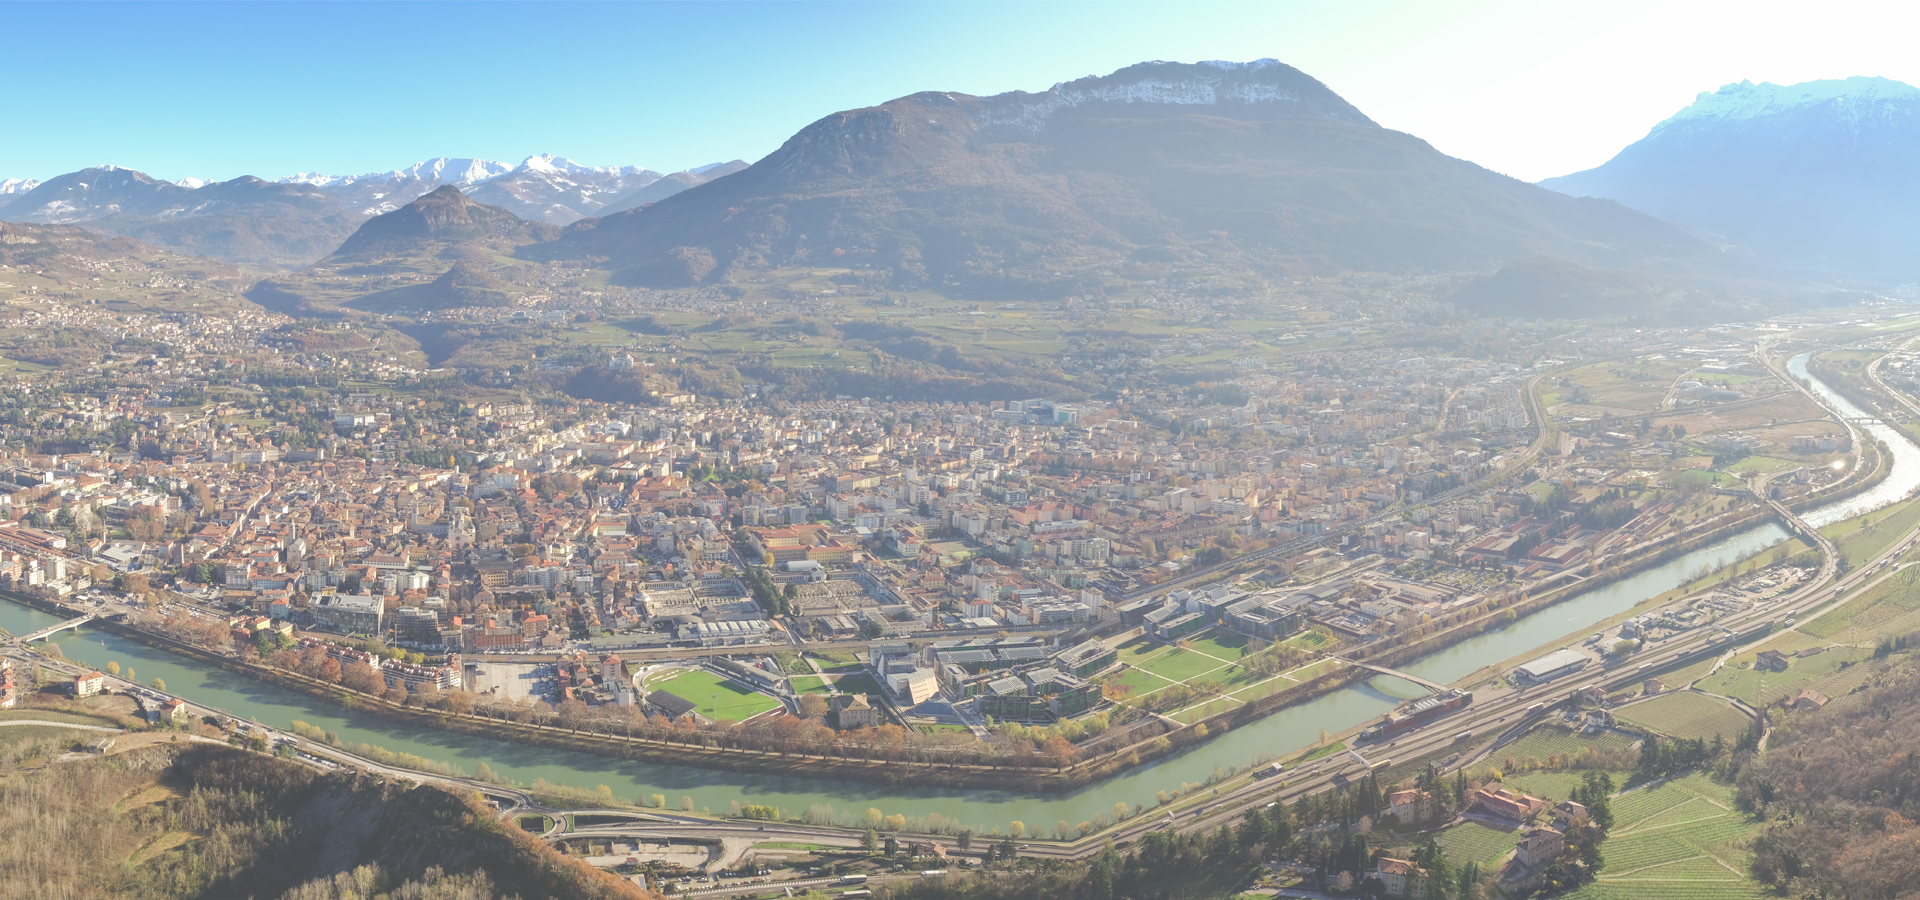 Trento, Italy